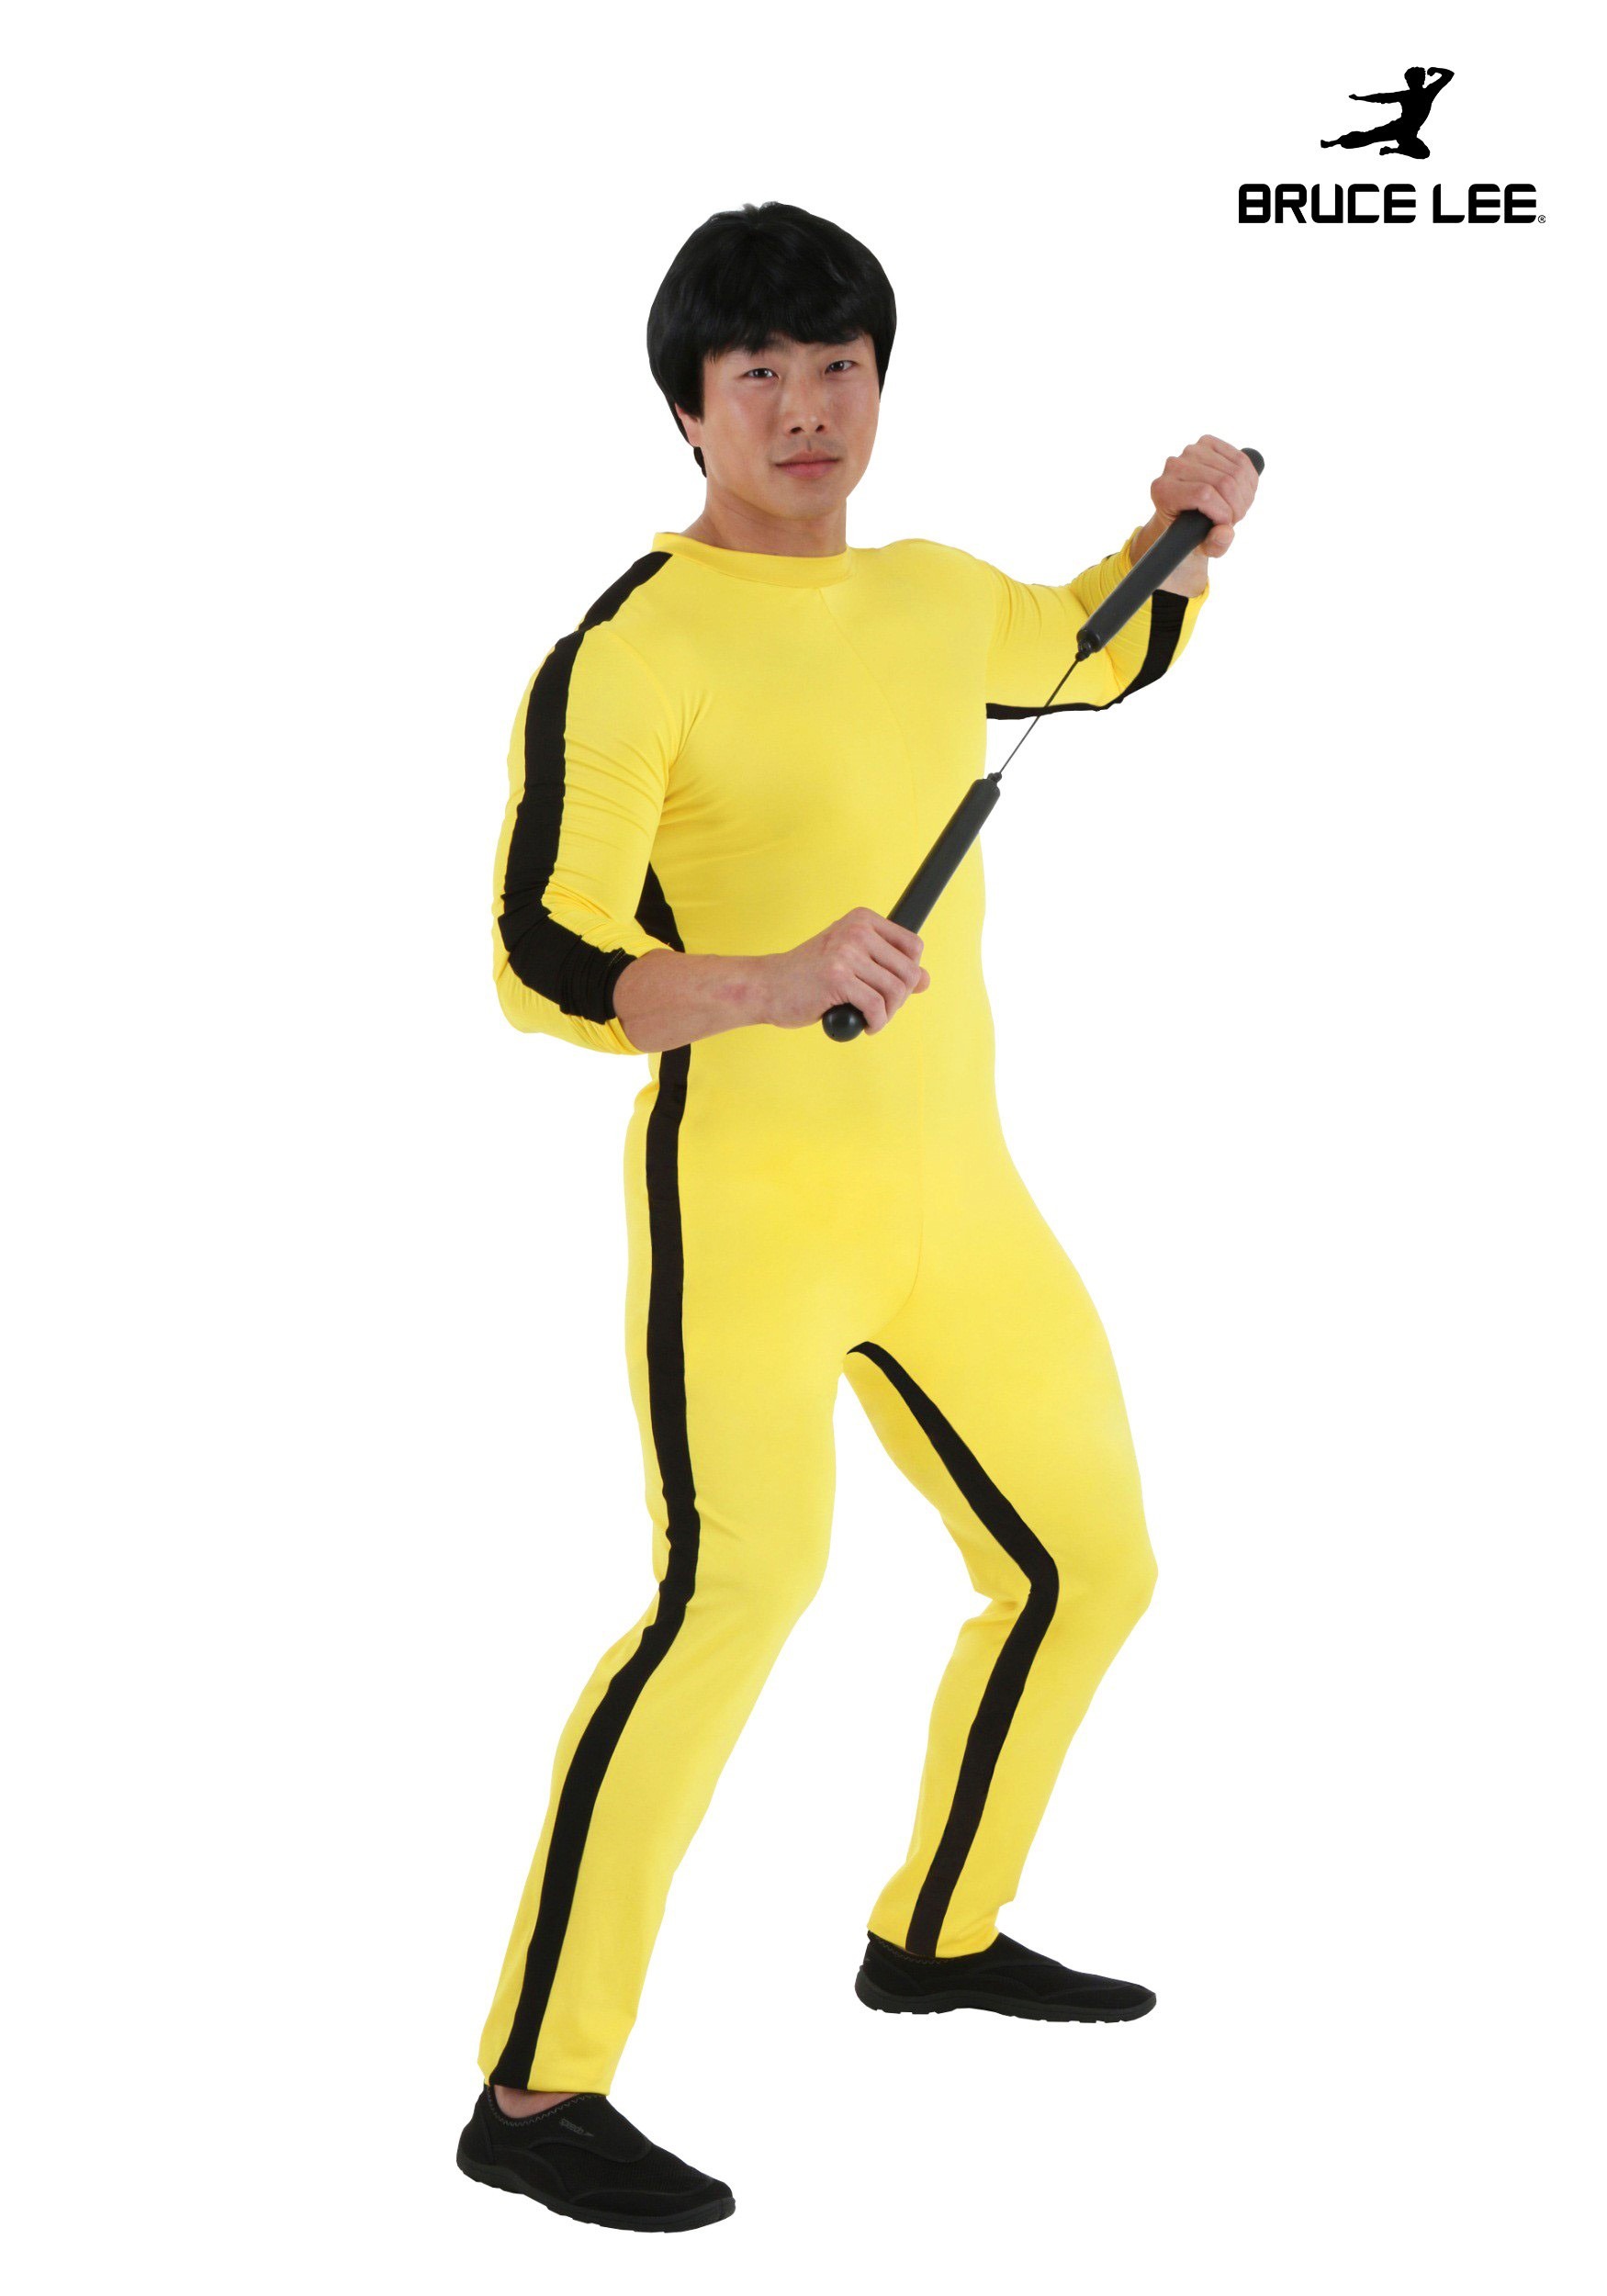 Men’s Bruce Lee Costume